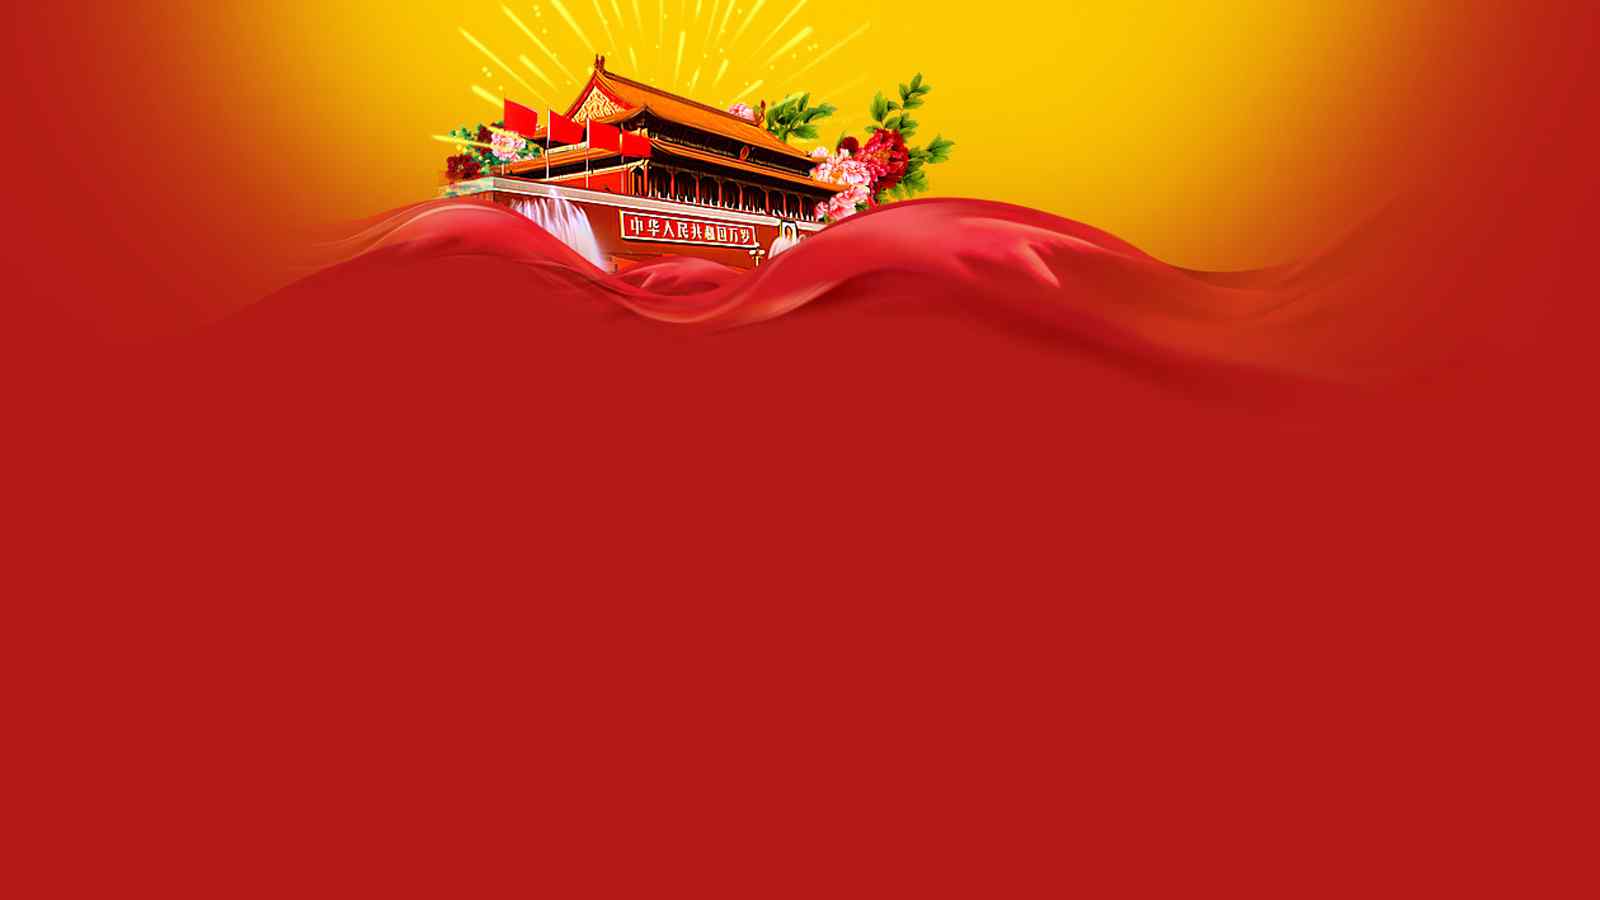 十一国庆节大气火红的图片壁纸